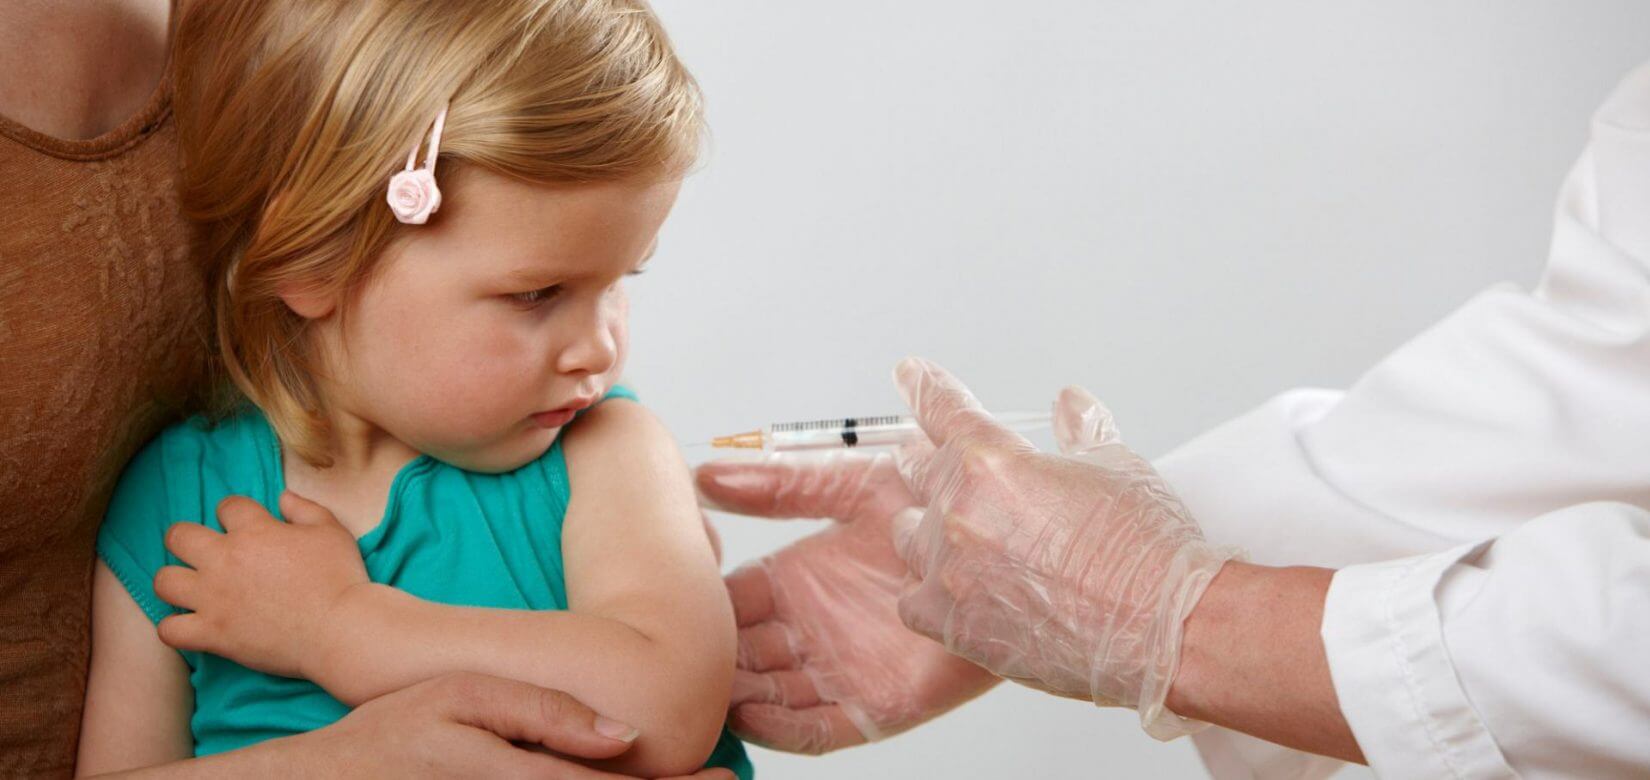 Εμβόλιο Moderna για βρέφη και μικρά παιδιά: Ασφαλές, αλλά όχι αποτελεσματικό